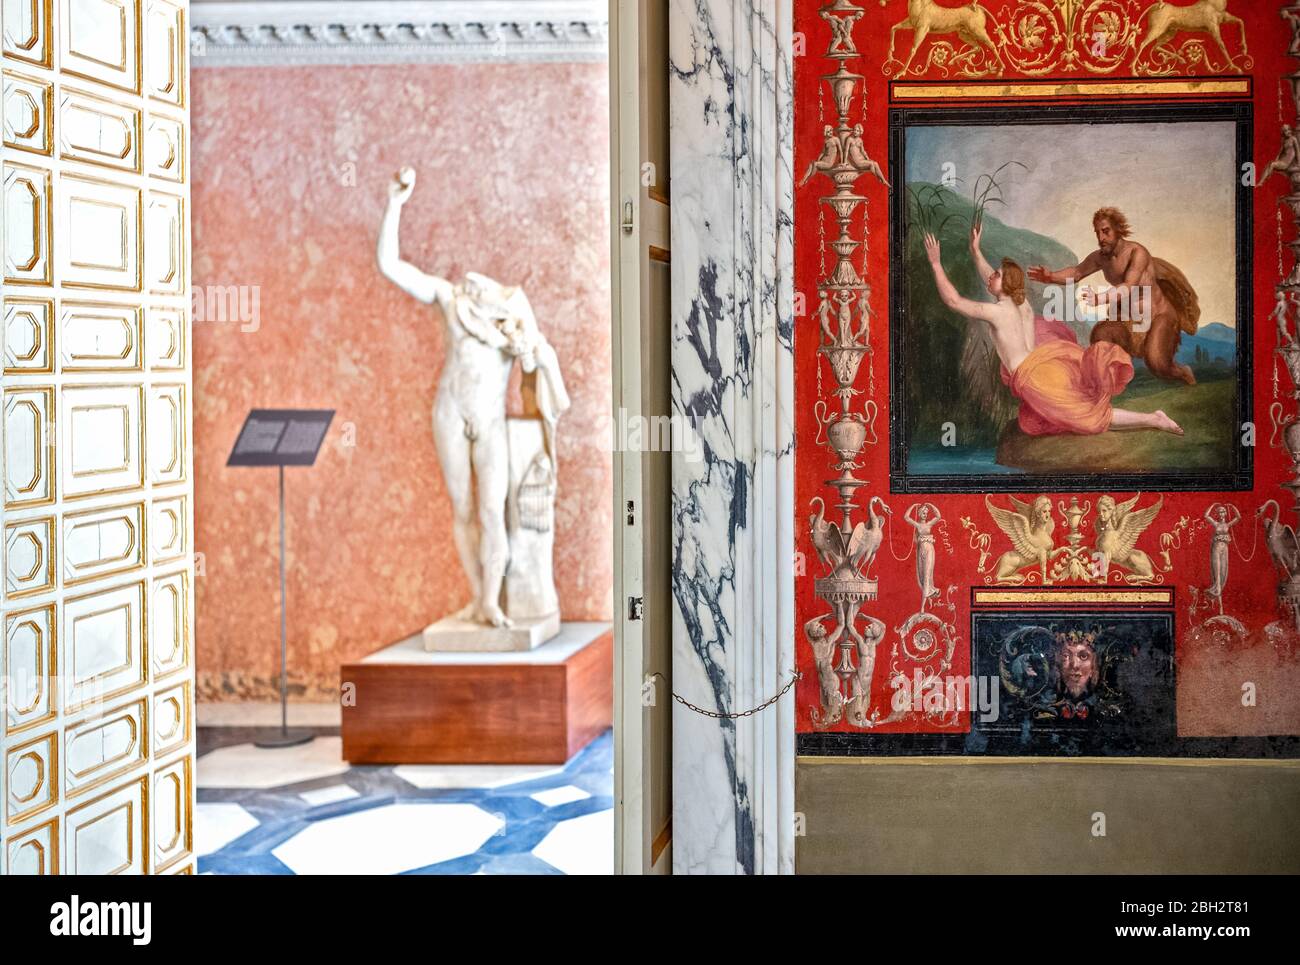 Rom, Italien - 20. August 2017: Villa Torlonia, das große Badezimmer mit mythologischen Göttlichkeitsfiguren Stockfoto